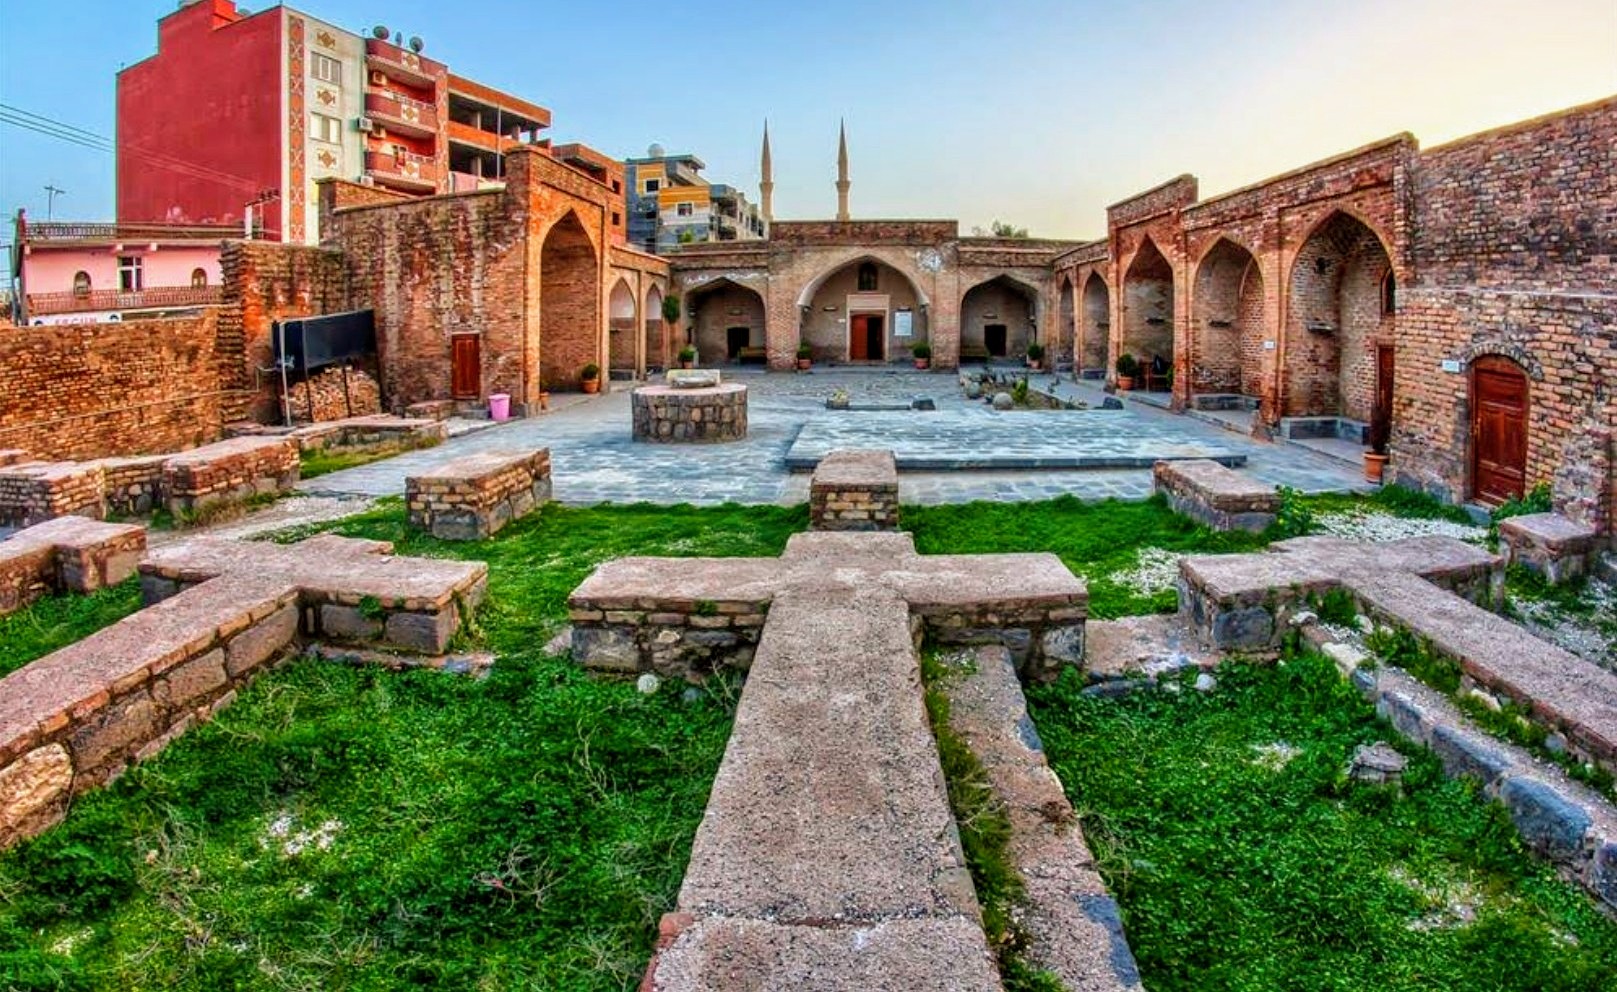 Şırnak'ın Gezilecek Yerleri: Kırmızı Medrese – Belgelerle Tarih